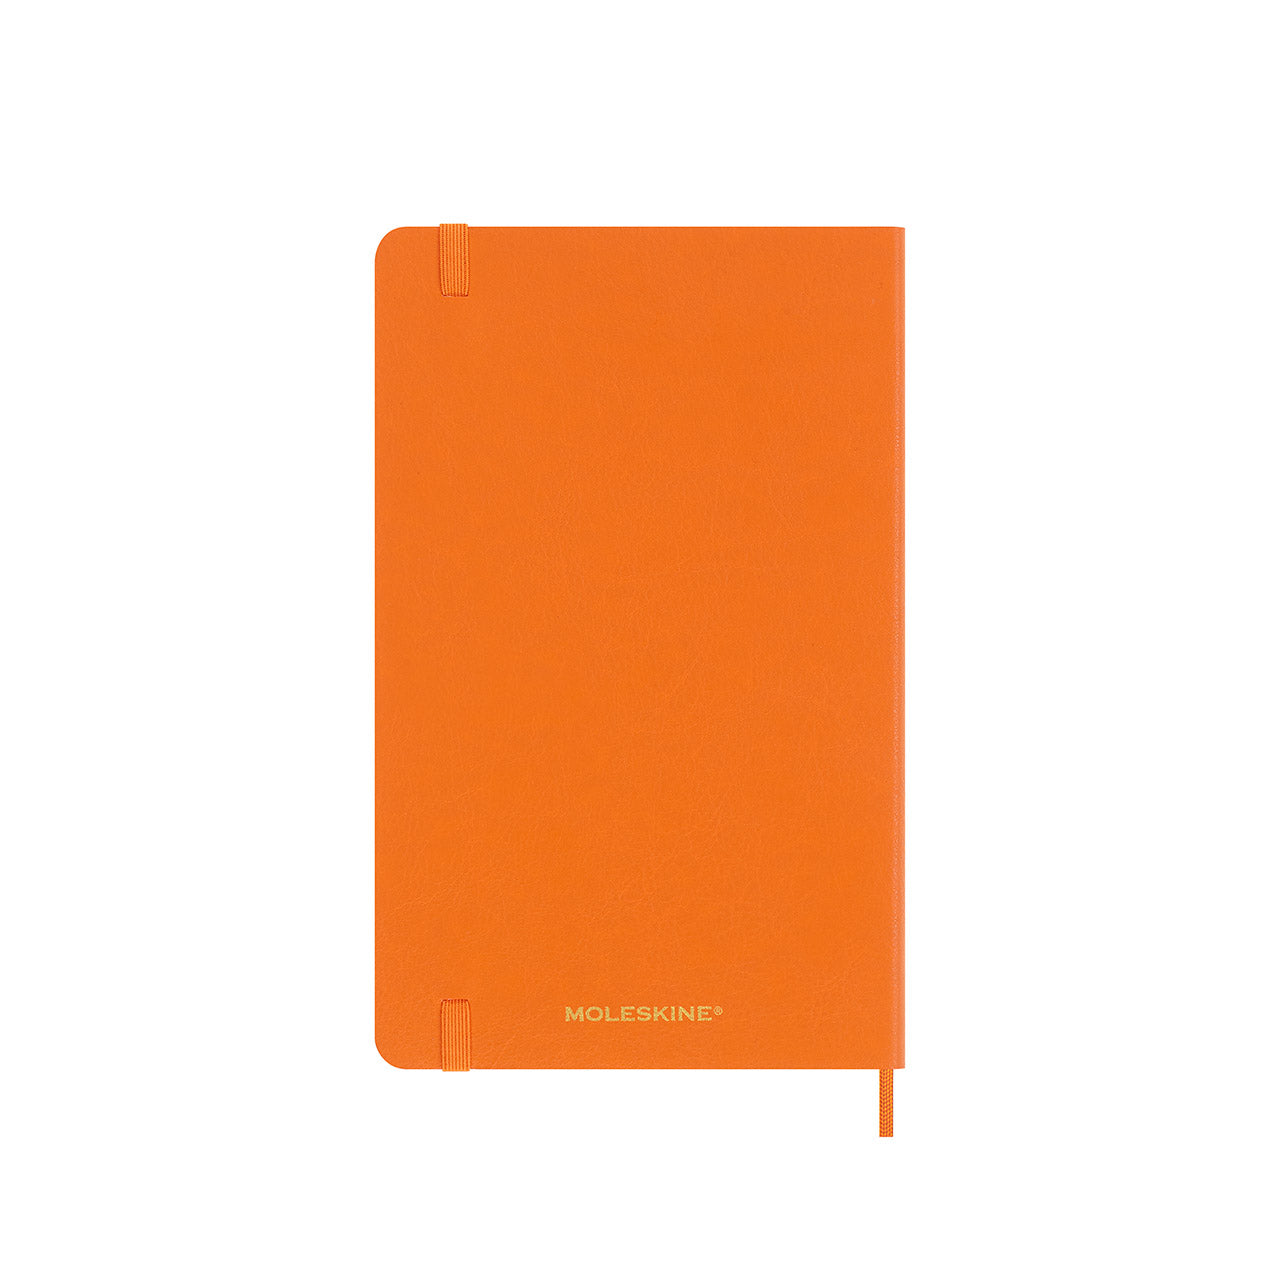 Precious & Ethical Capri Soft Cover Notebook Large Orange